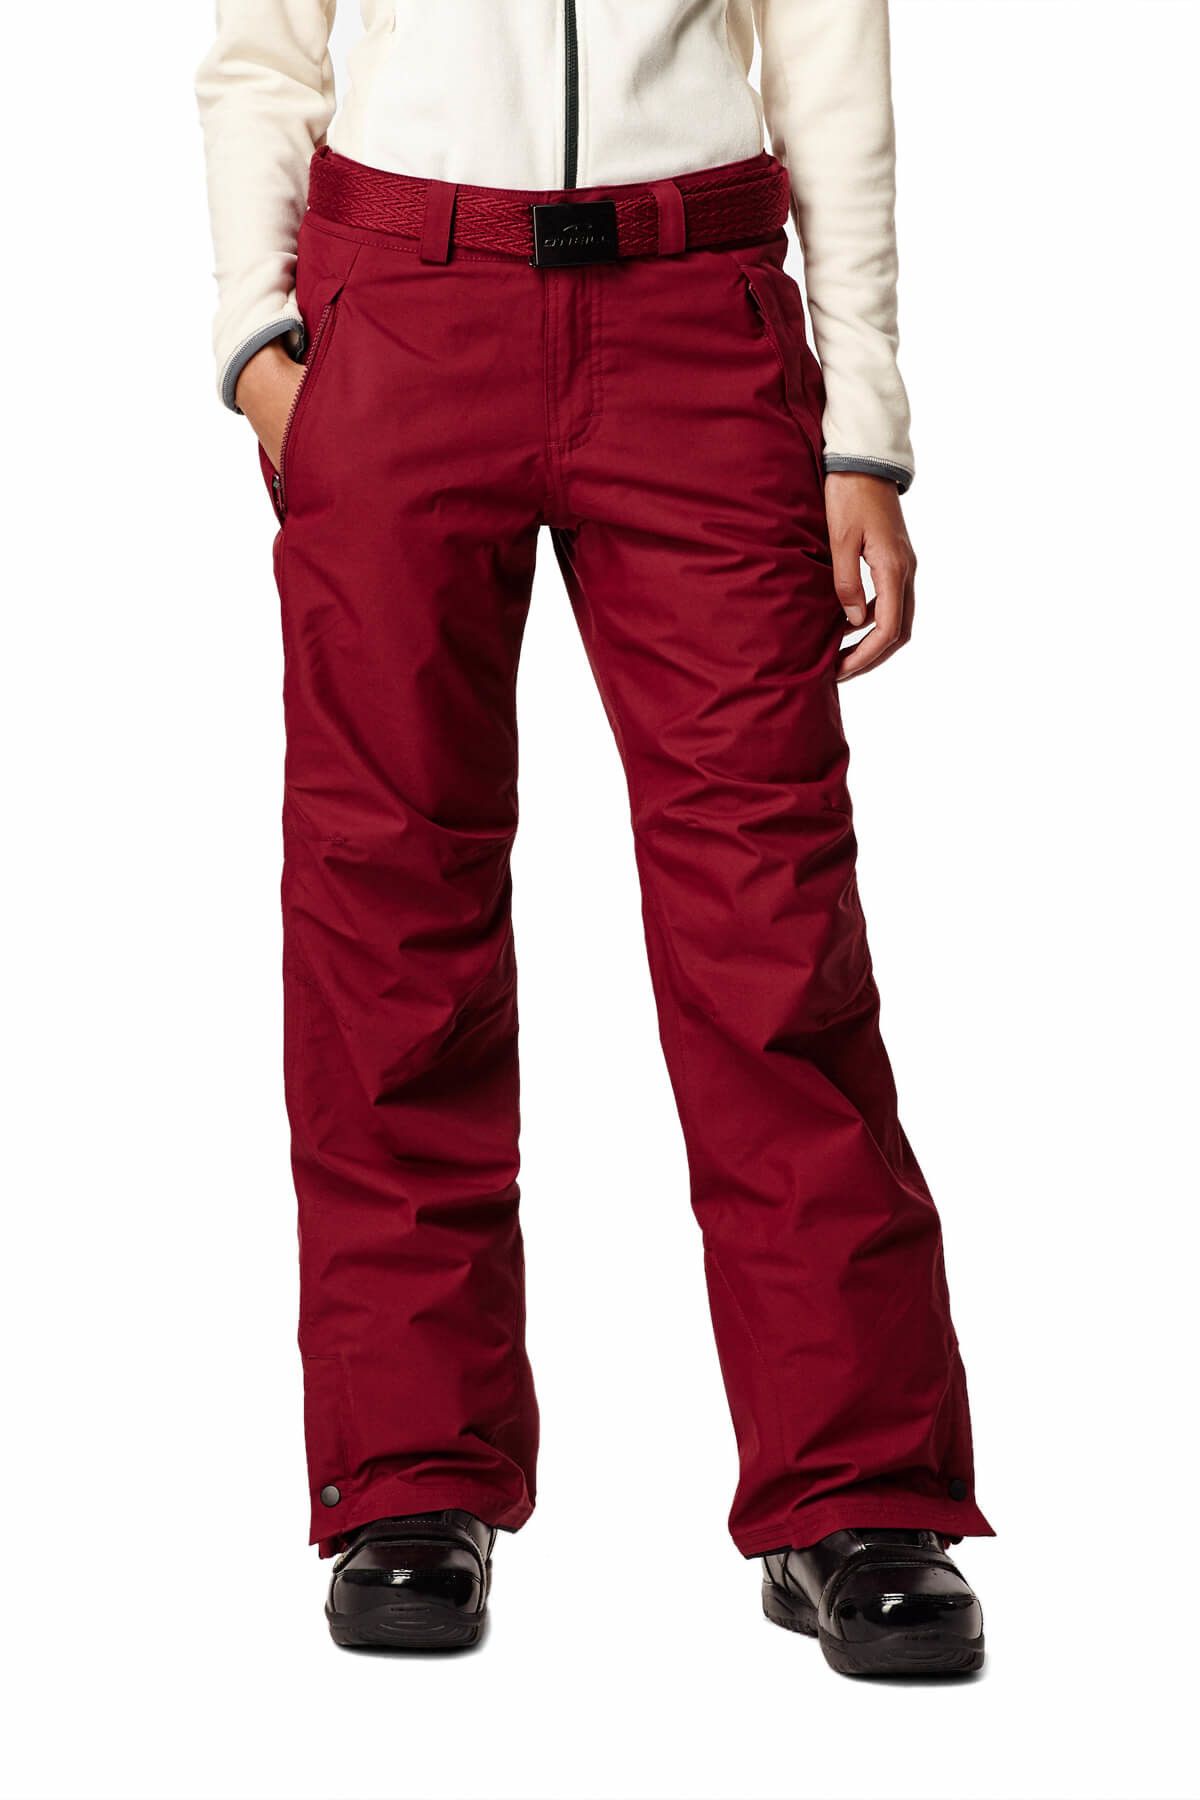 O'Neill Star Kadın Kemerli Kırmızı Kayak Pantolon - 658018-3049